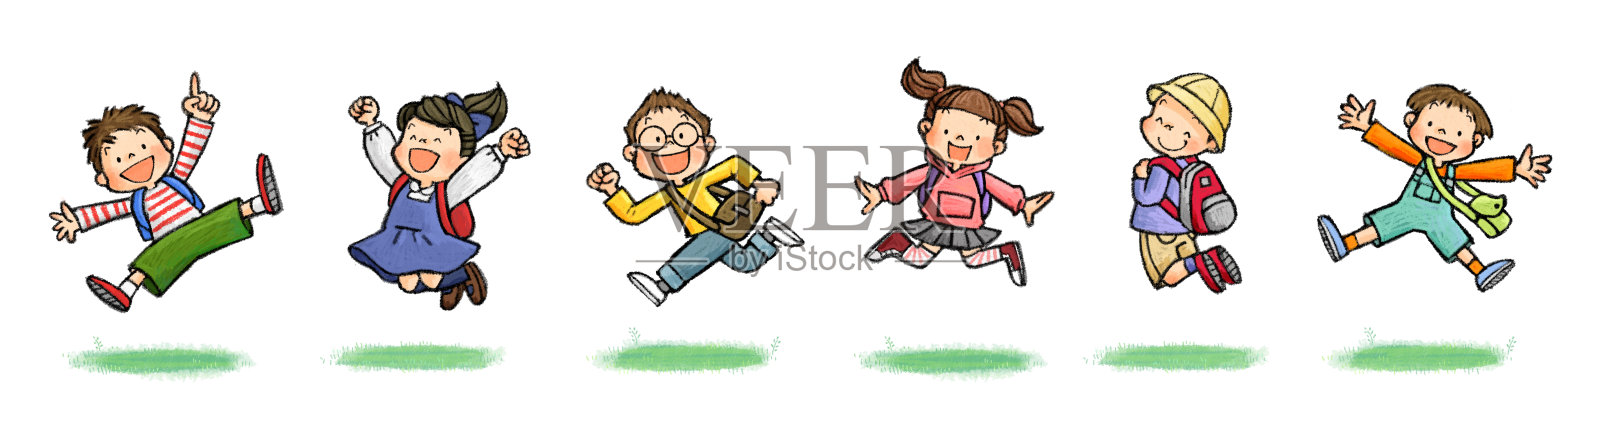 儿童跳跃图B组(带包)插画图片素材